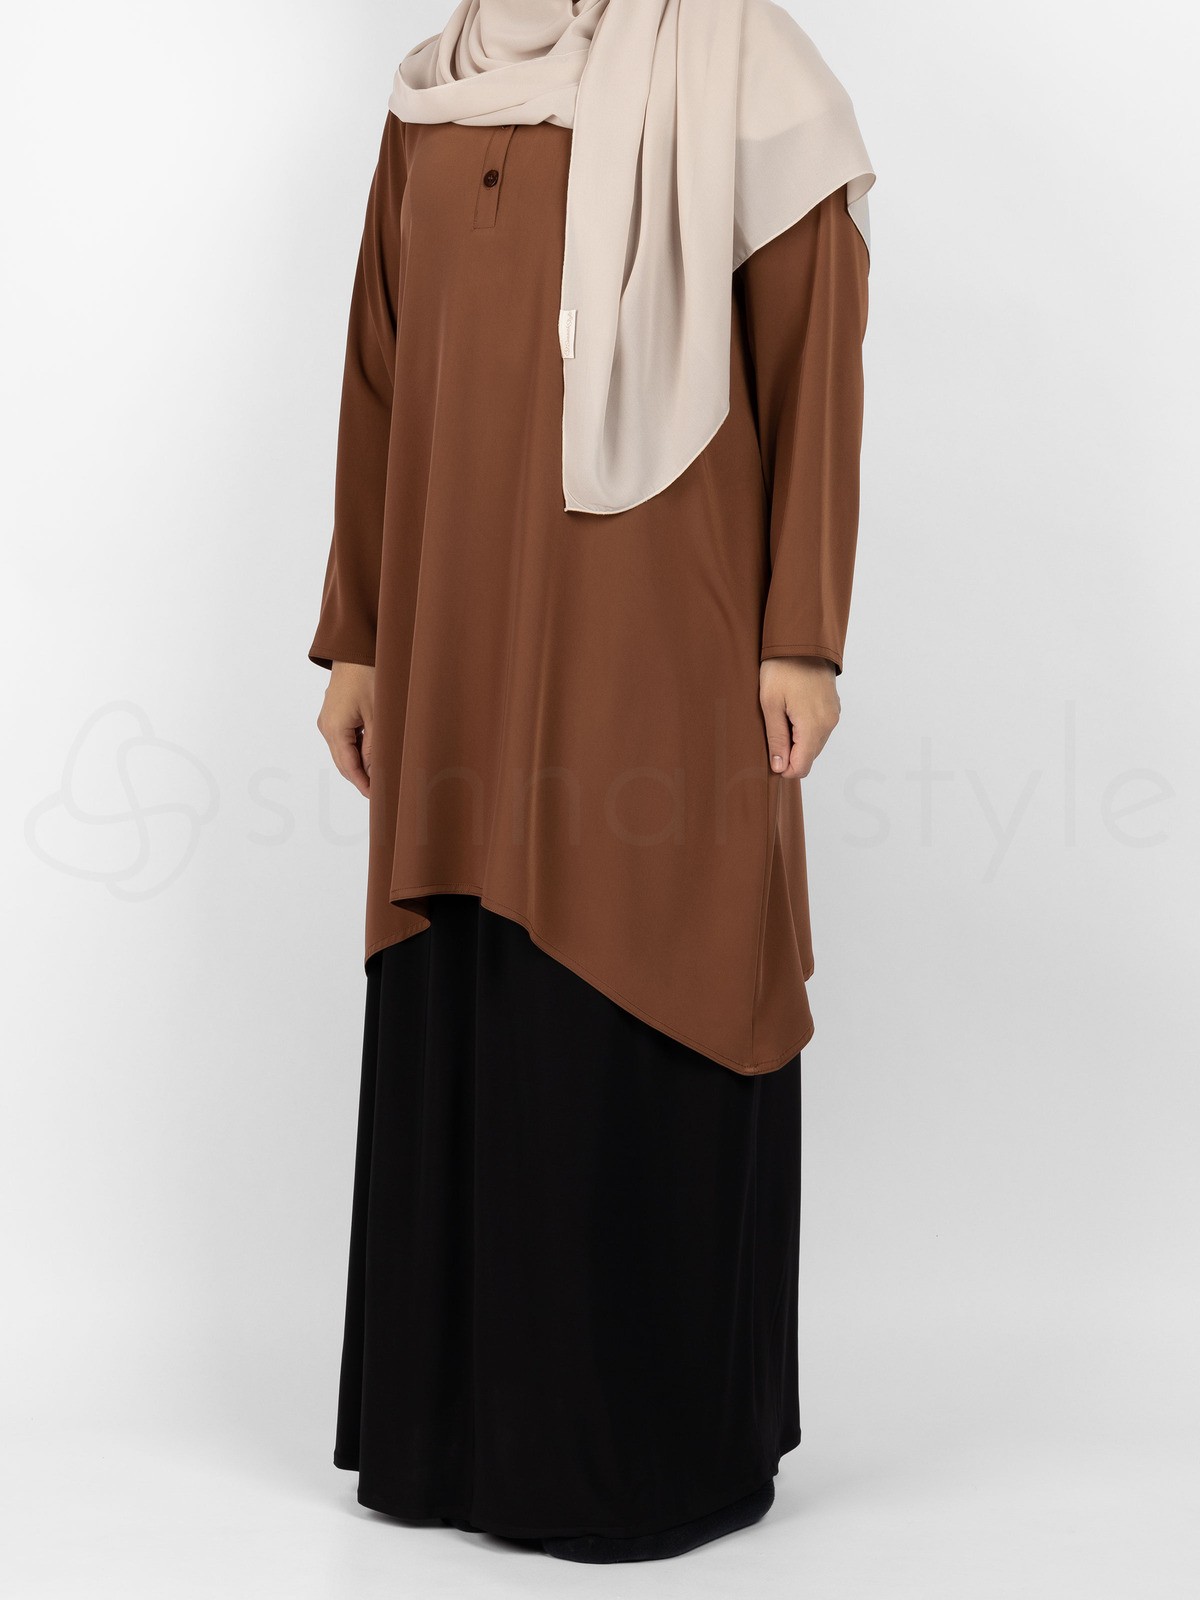 Sunnah Style - Avant Abaya Top (Russet)